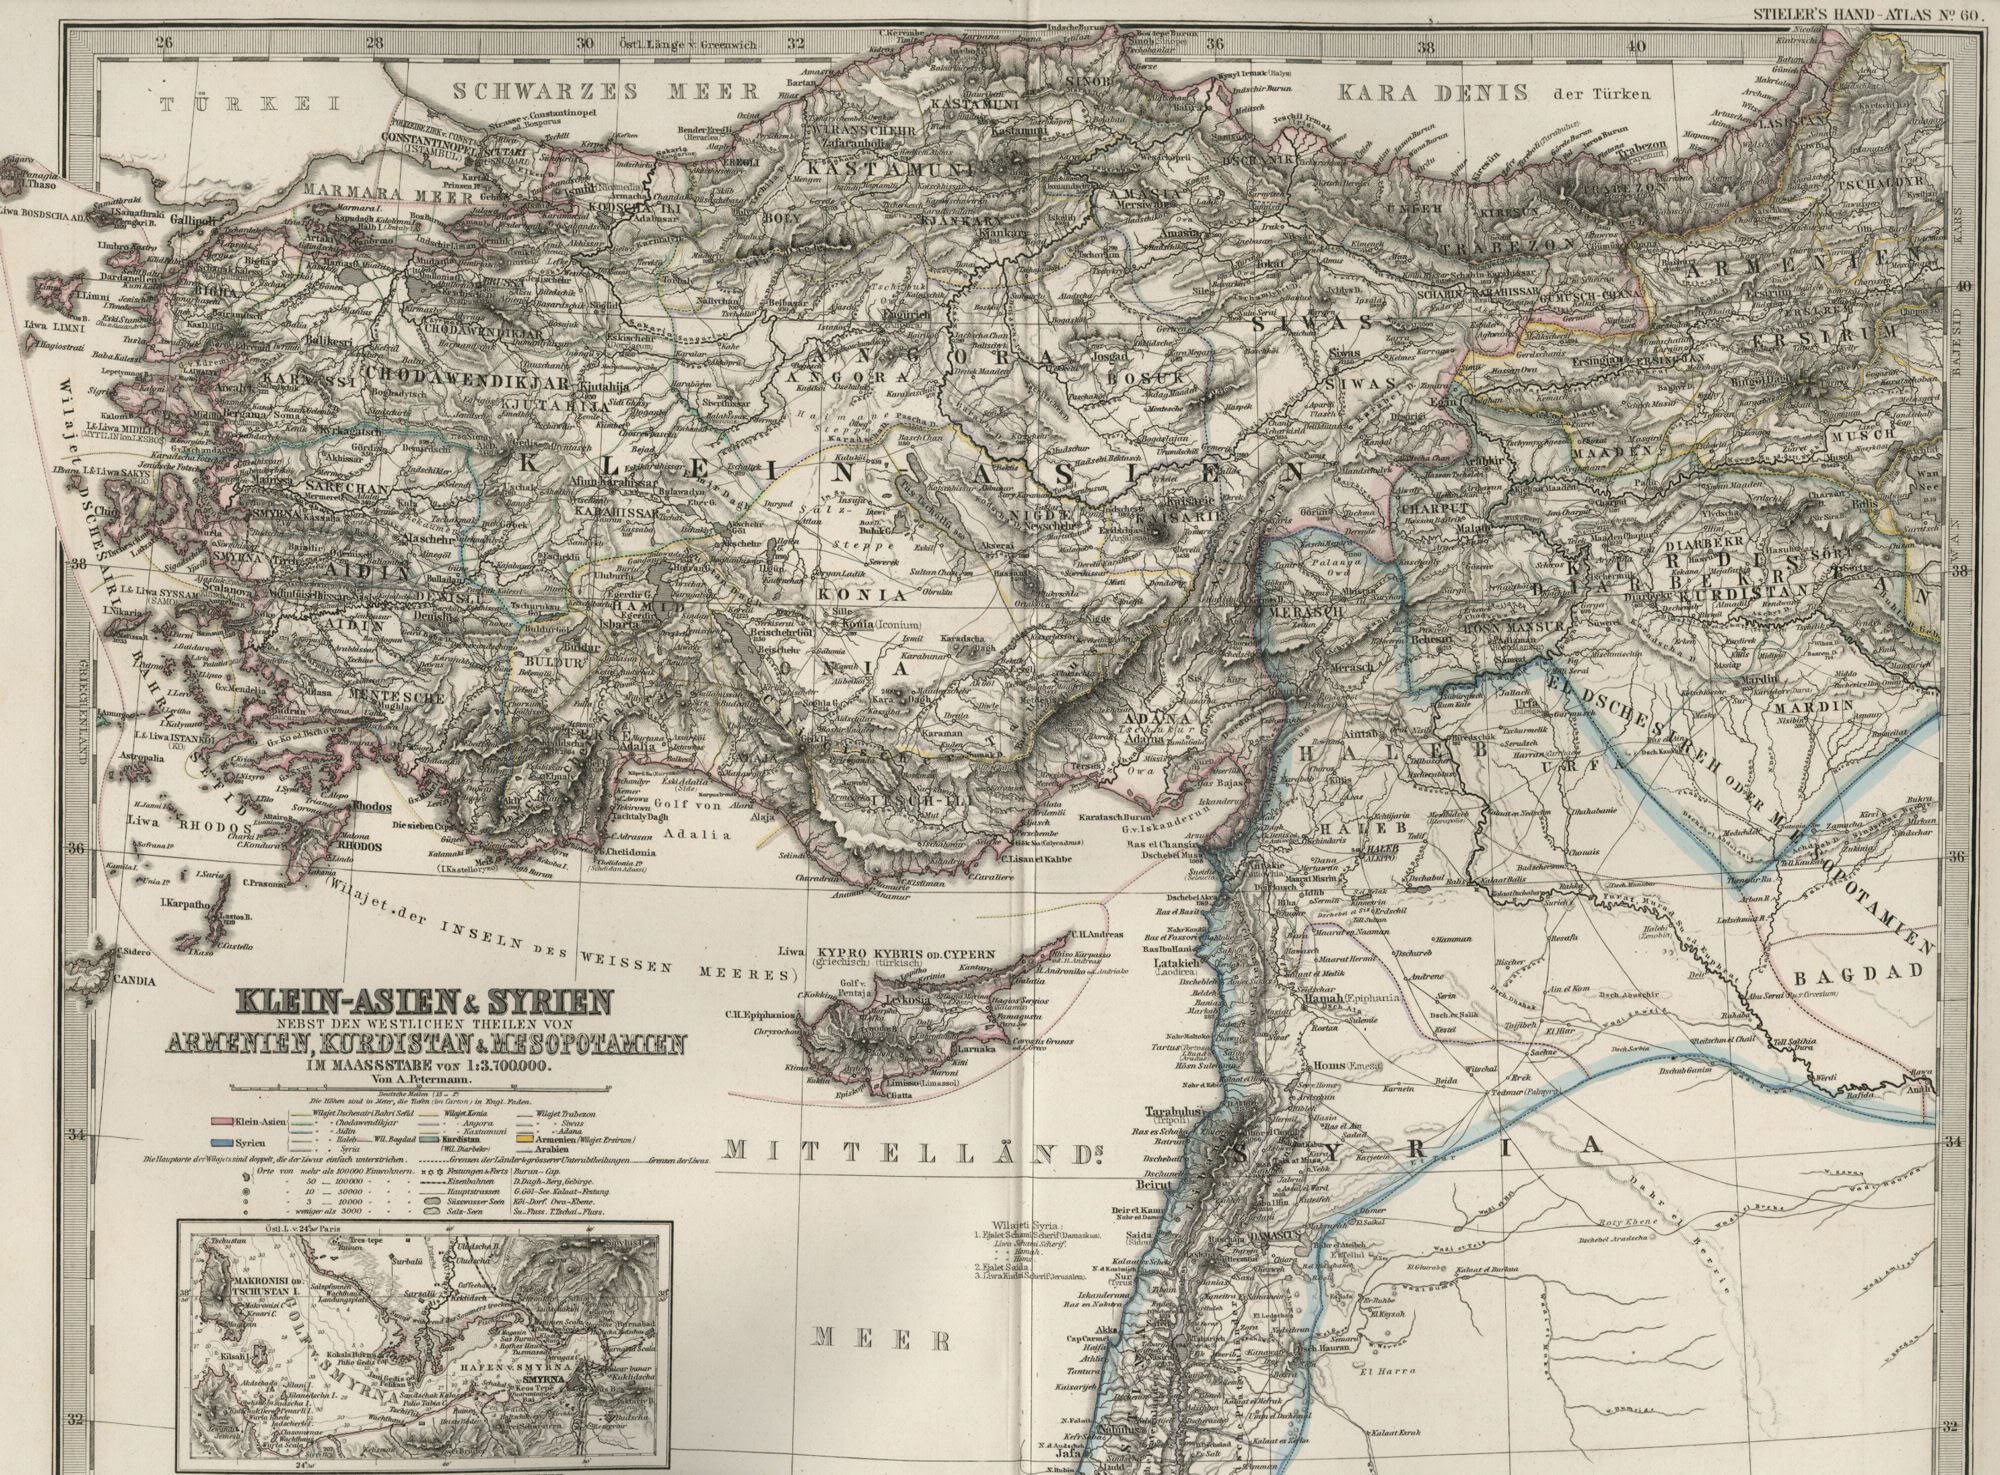 kurdistan, Kurd, Kurds, Kurdish, Map, Maps, Poster Wallpaper